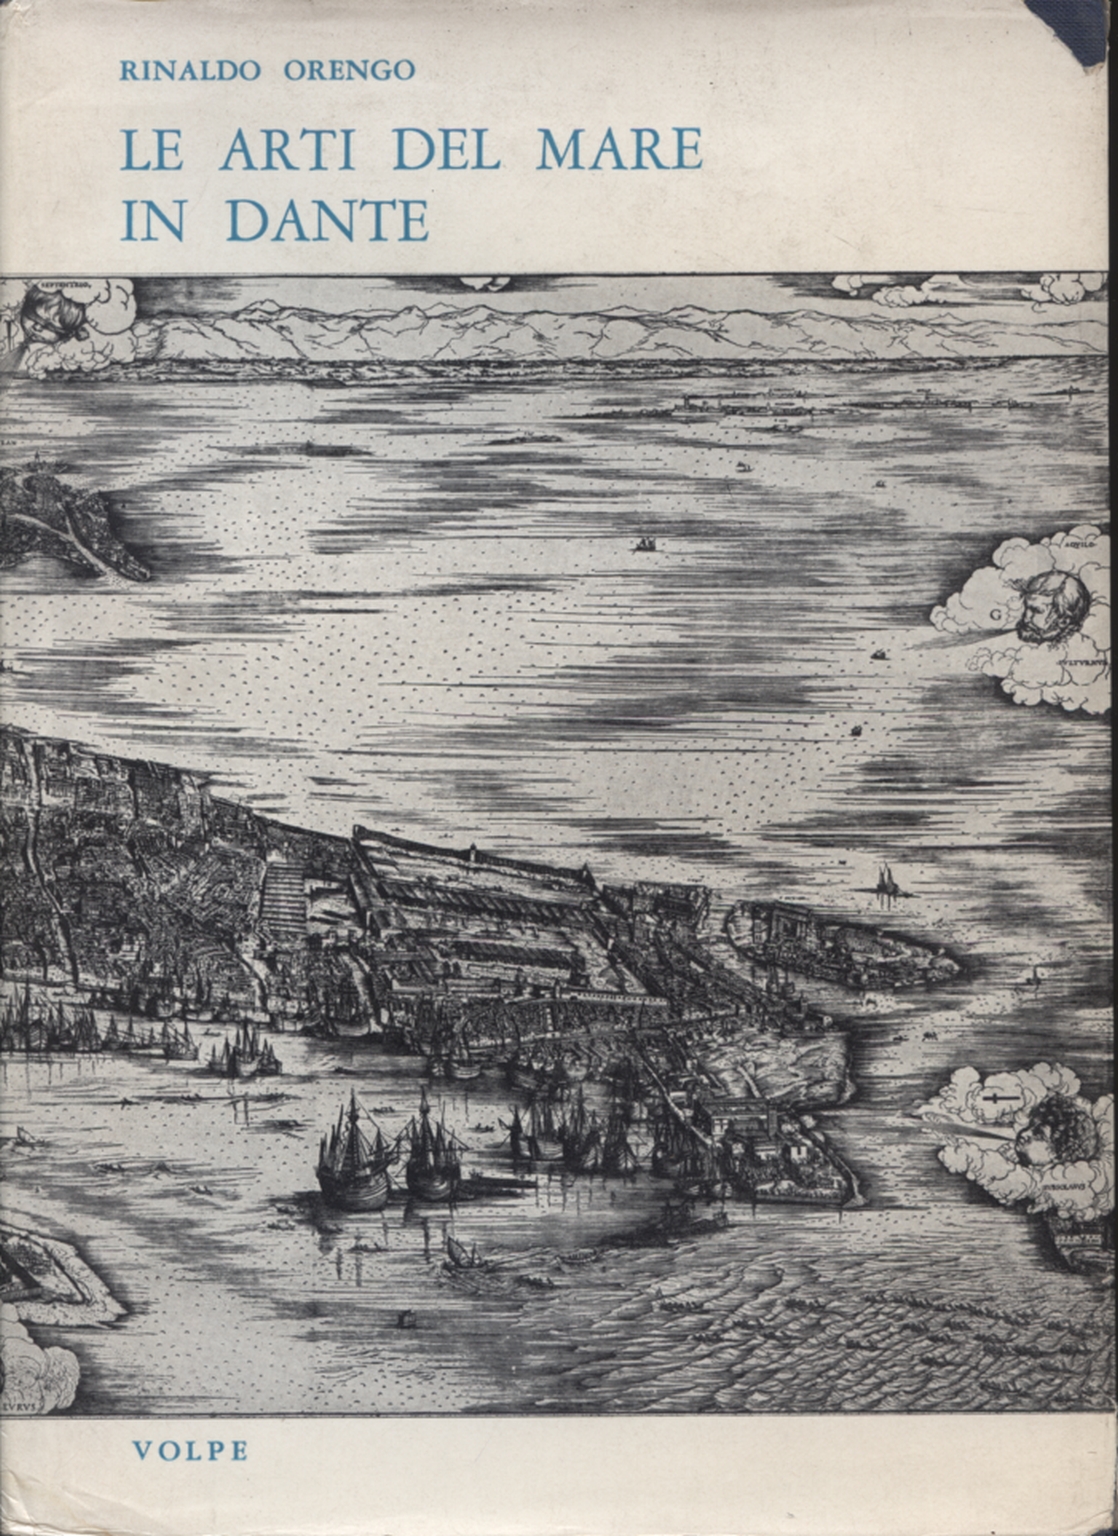 The arts of the sea in Dante, Rinaldo Orengo